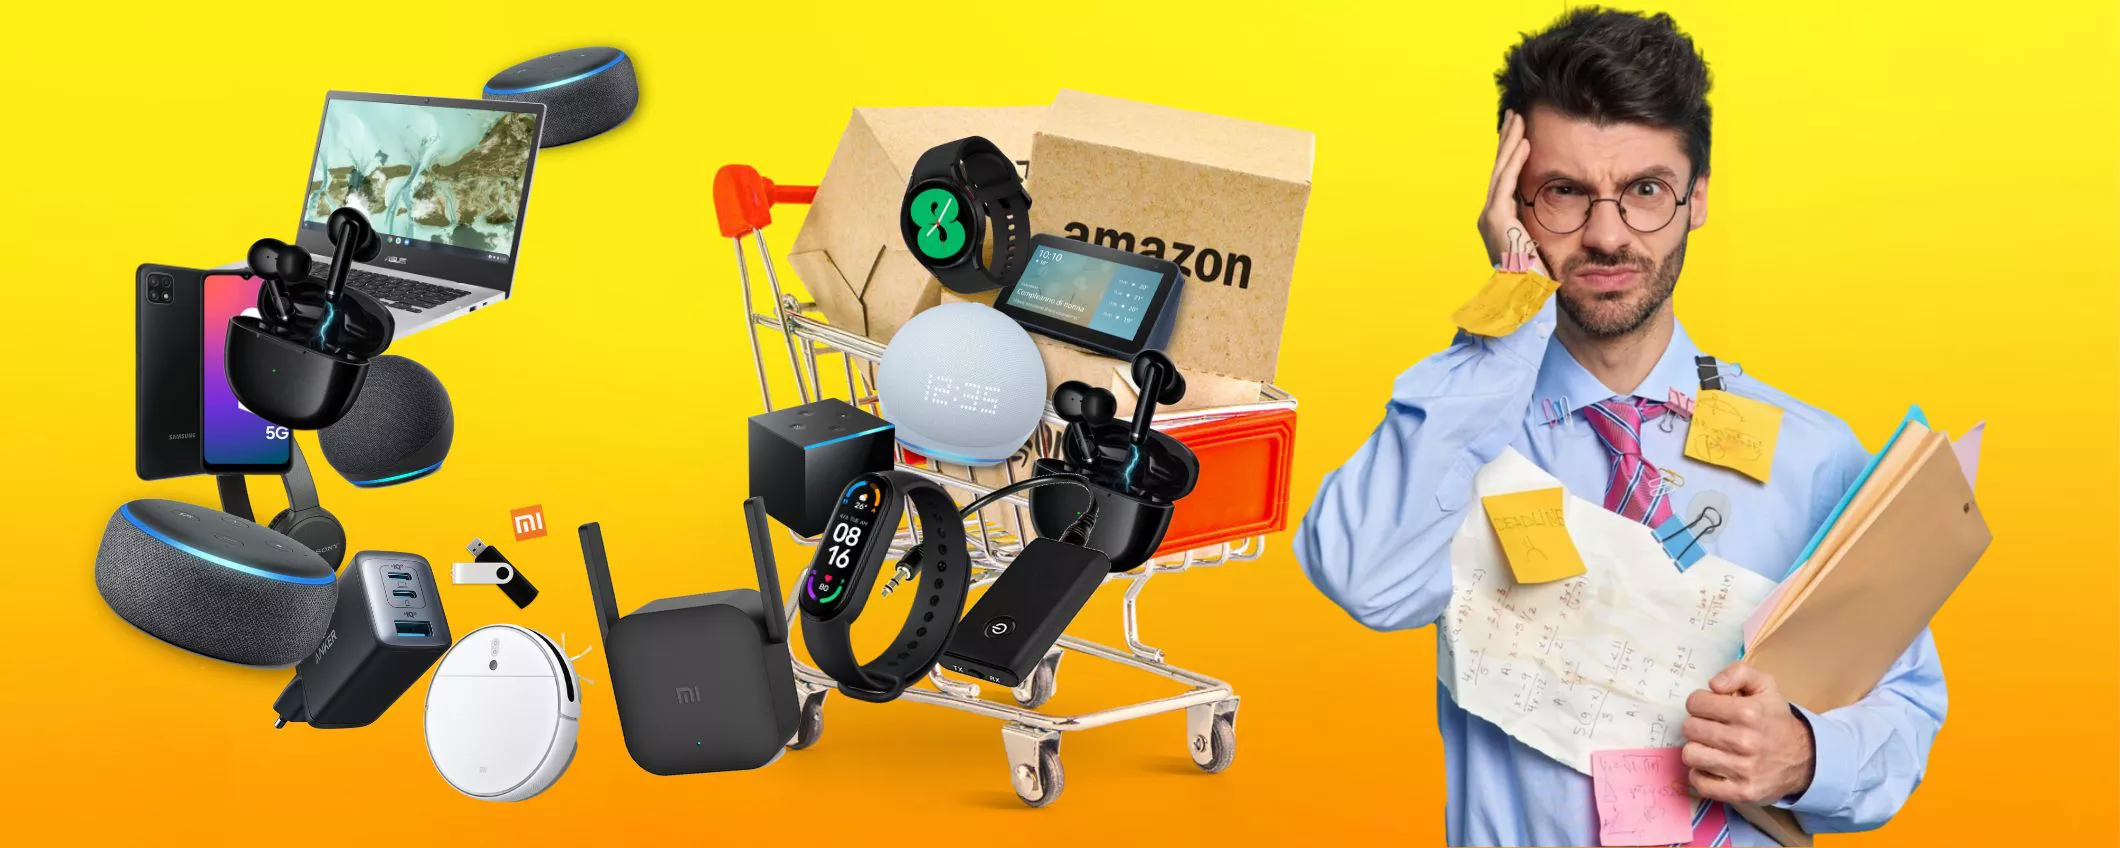 STRAORDINARI Amazon: i migliori PRODOTTI tech fino al 50% di sconto